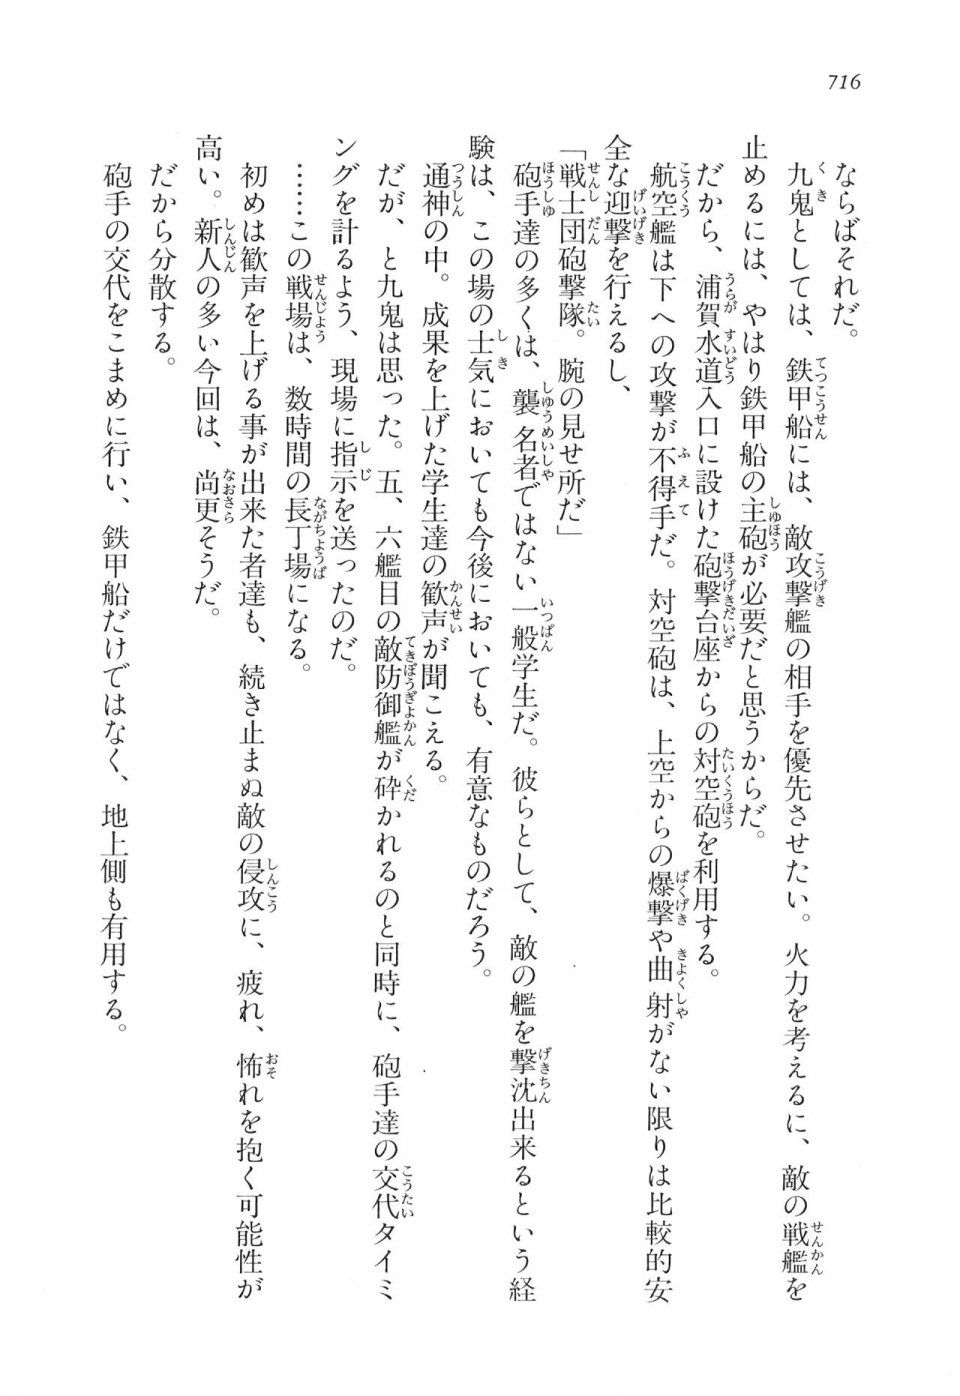 Kyoukai Senjou no Horizon LN Vol 16(7A) - Photo #716